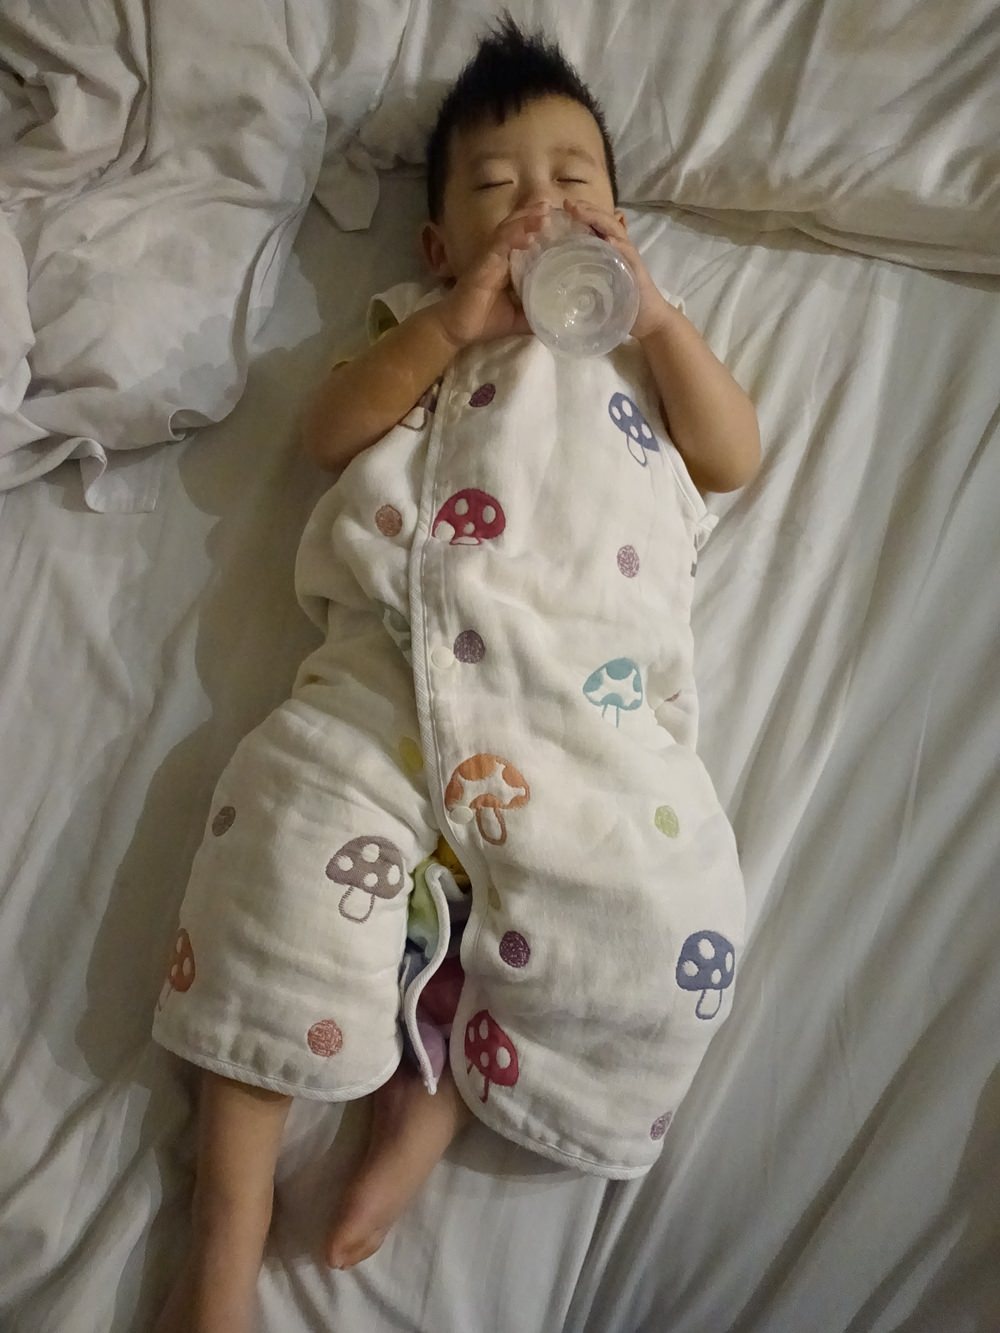 【育兒好物】日本Hoppetta防踢被&成長型睡褲~覺得每個寶寶都該有一件的夢幻防踢被